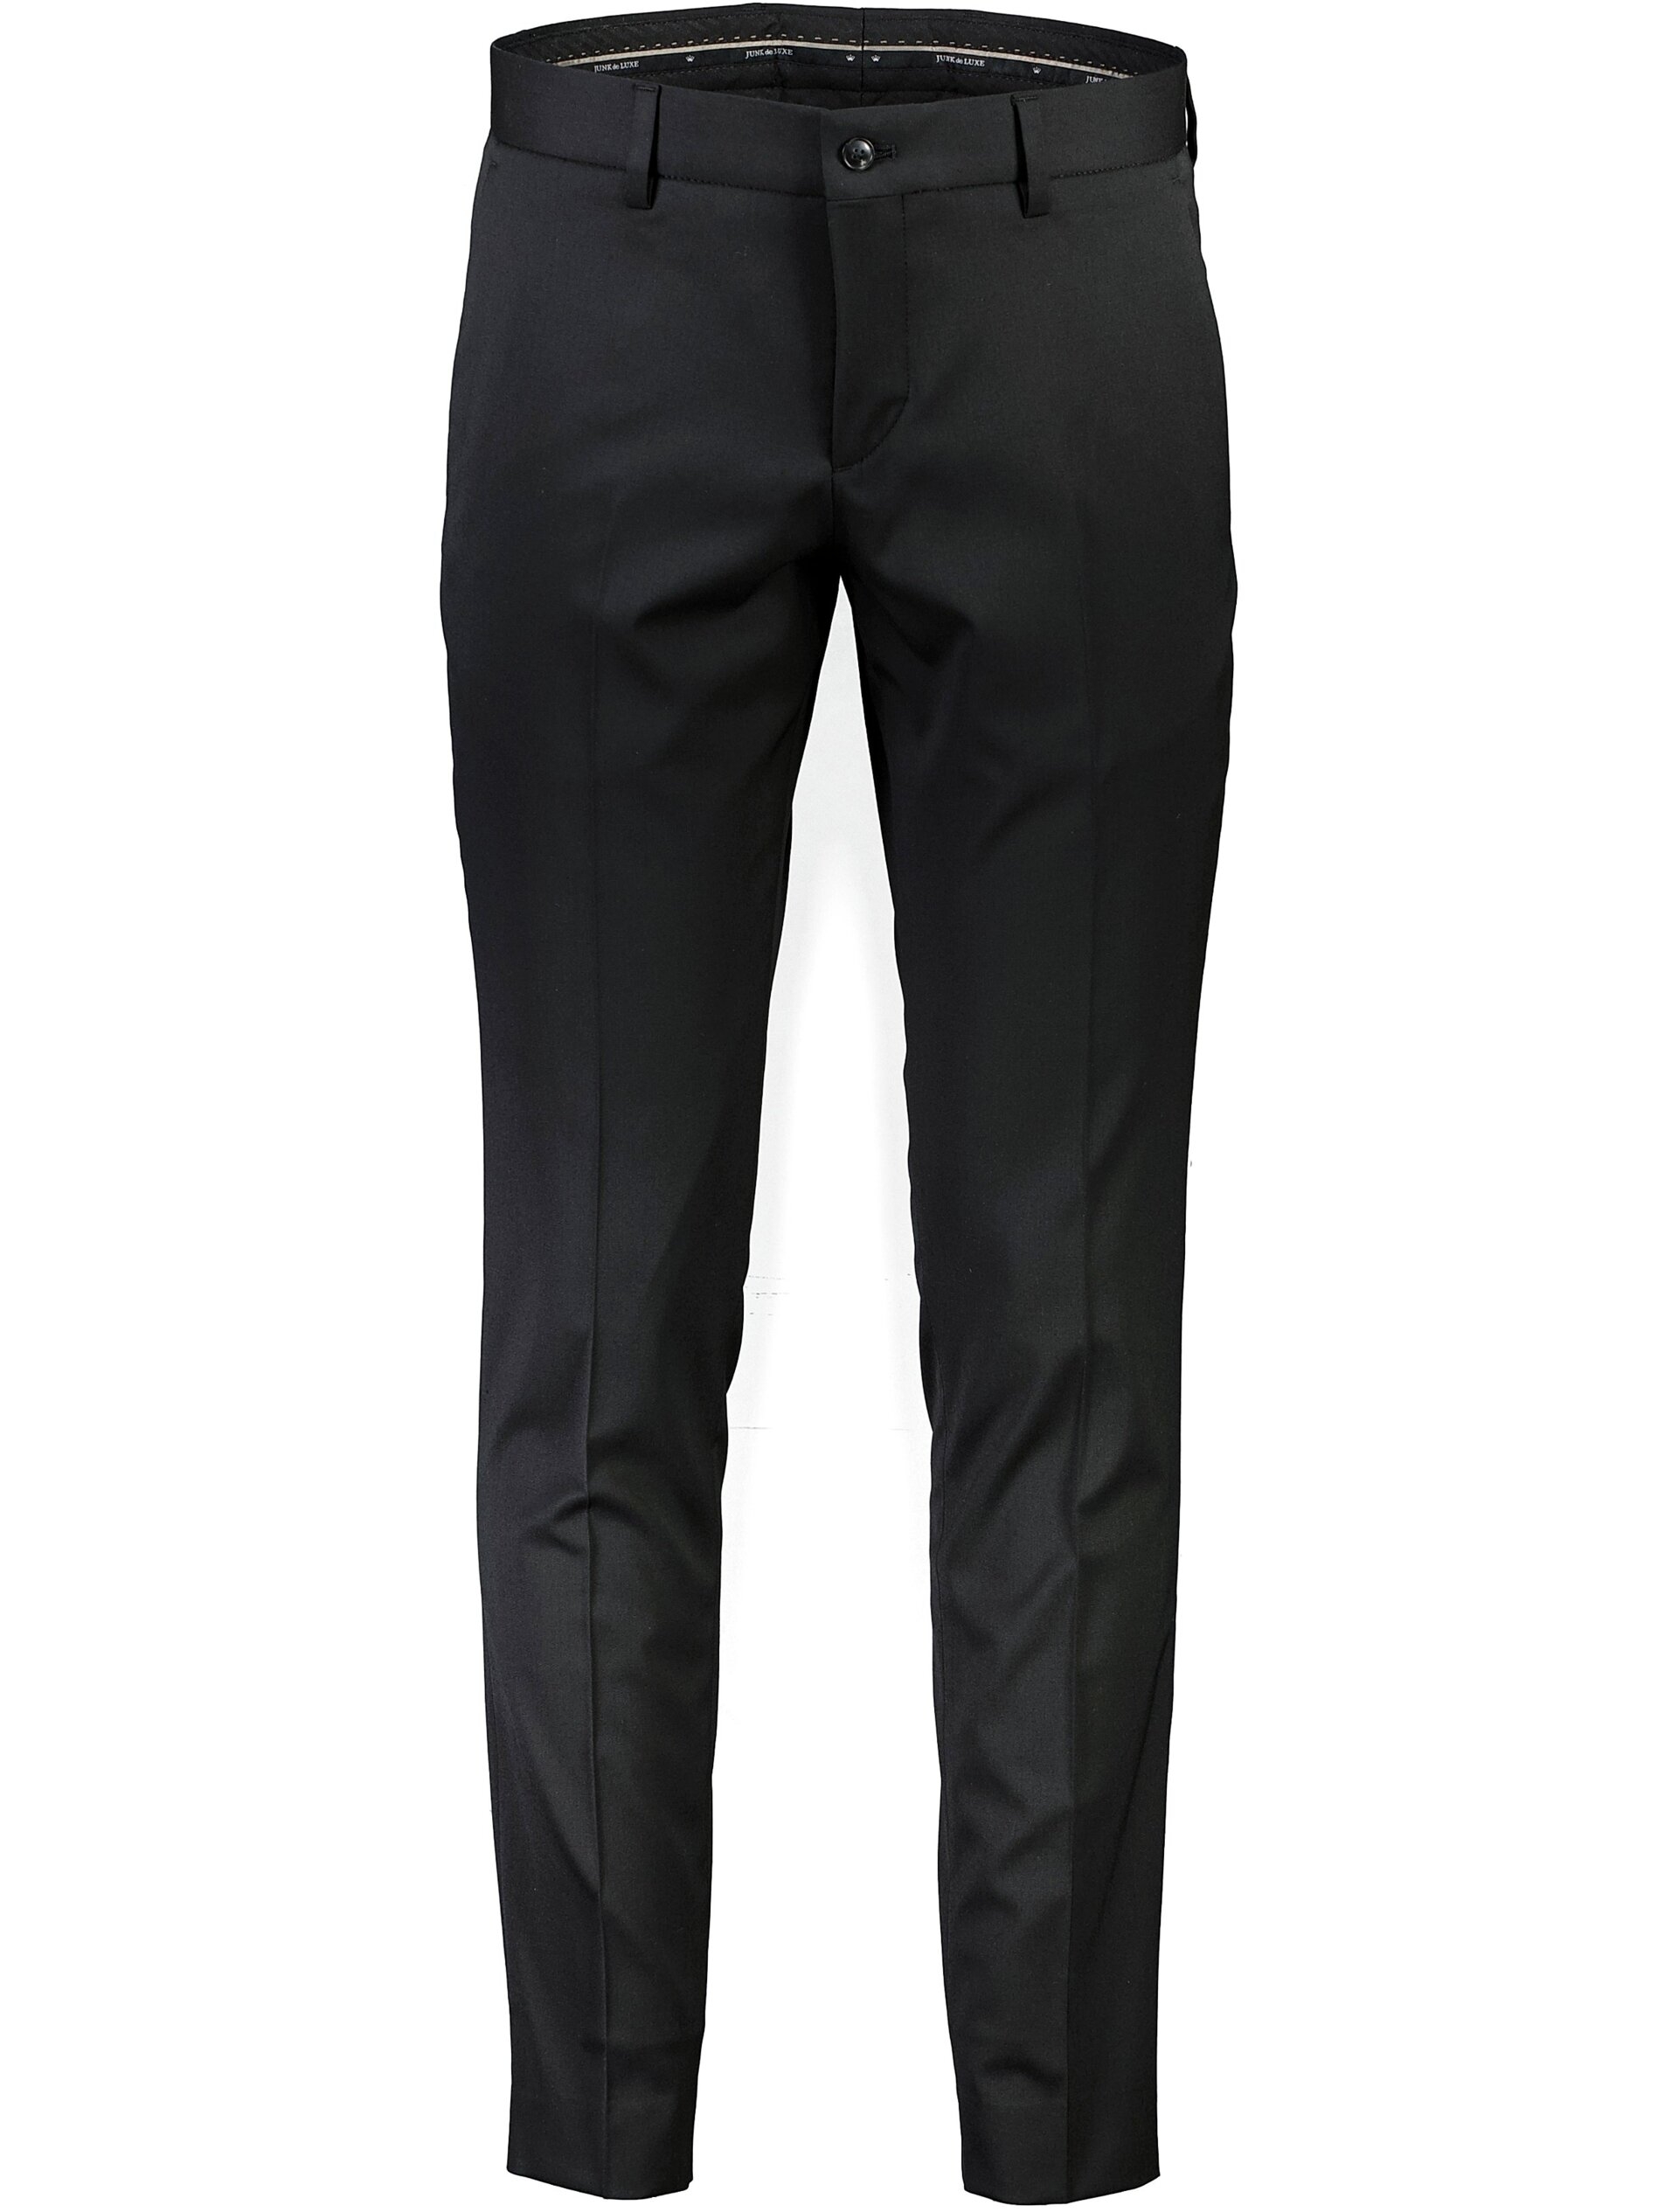 Junk de Luxe Suit pants black / black